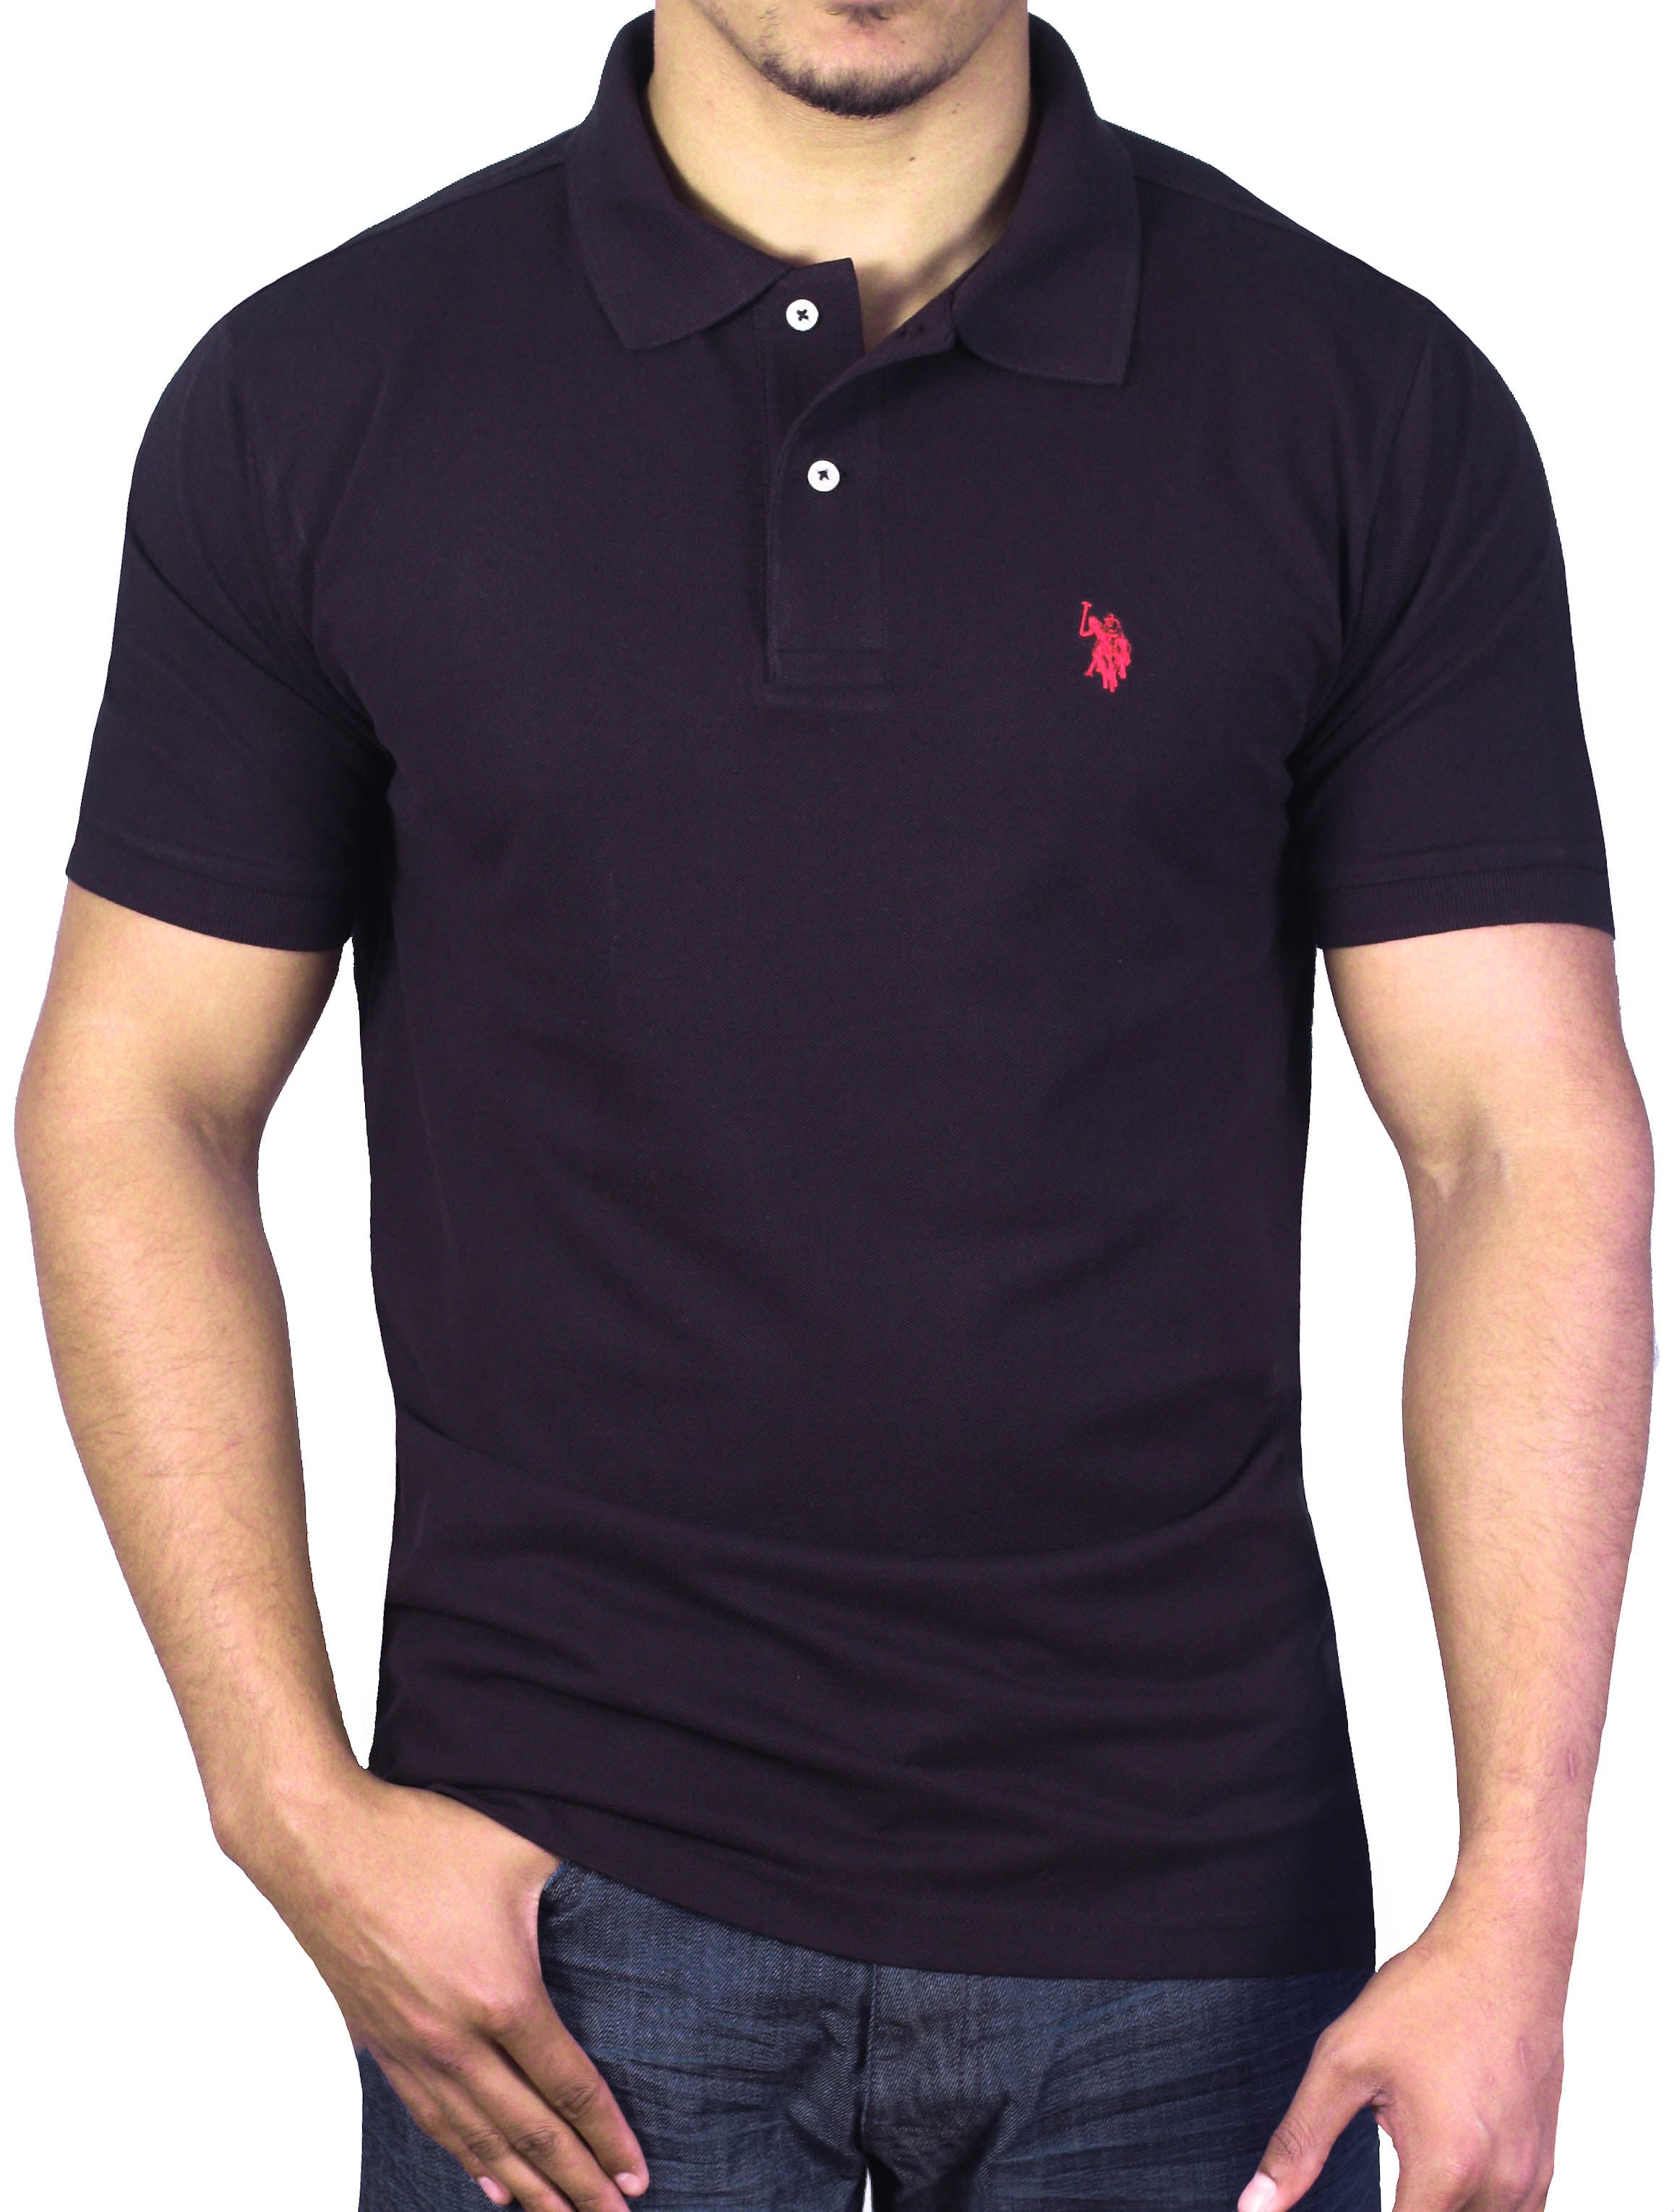 US Polo Assn. - U.S. Polo Assn. Men's Pique Small Logo Polo Shirt ...